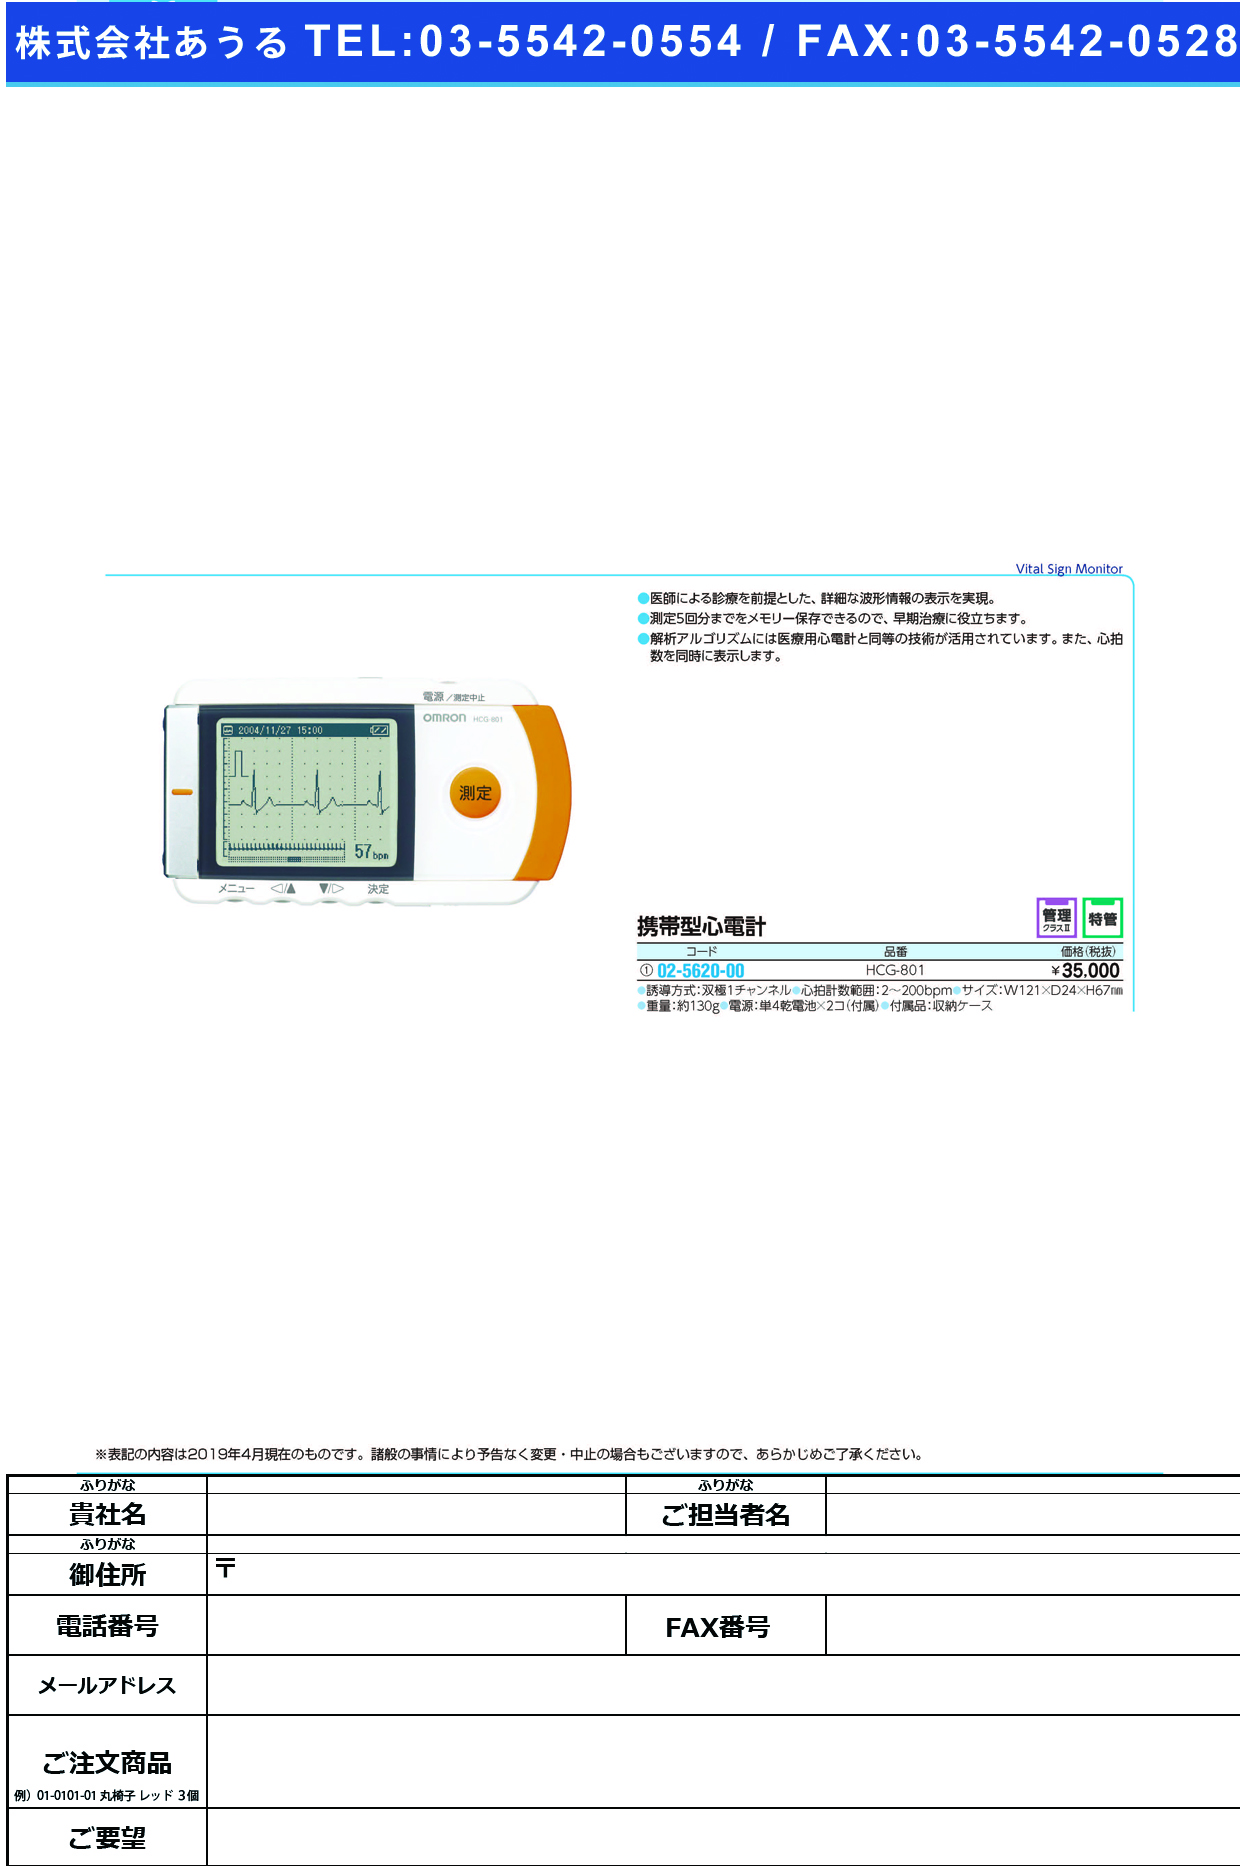 (02-5620-00)携帯型心電計 HCG-801 ｹｲﾀｲｶﾞﾀｼﾝﾃﾞﾝｹｲ(フクダコーリン)【1台単位】【2019年カタログ商品】